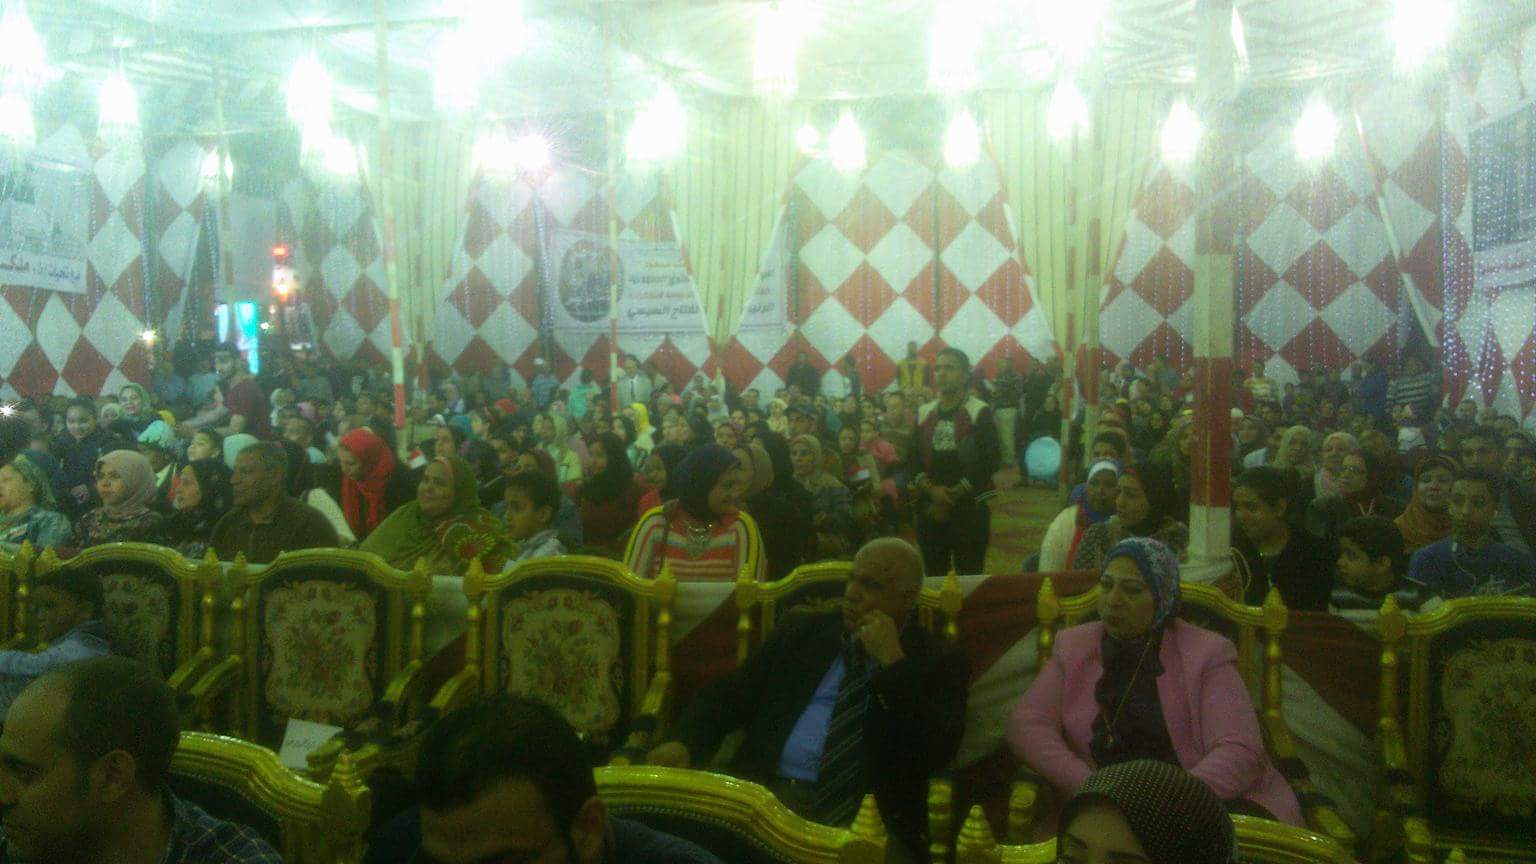 عرض لأطفال ذوى الاحتياجات الخاصة بمؤتمر دعم الرئيس بالإسكندرية (5)